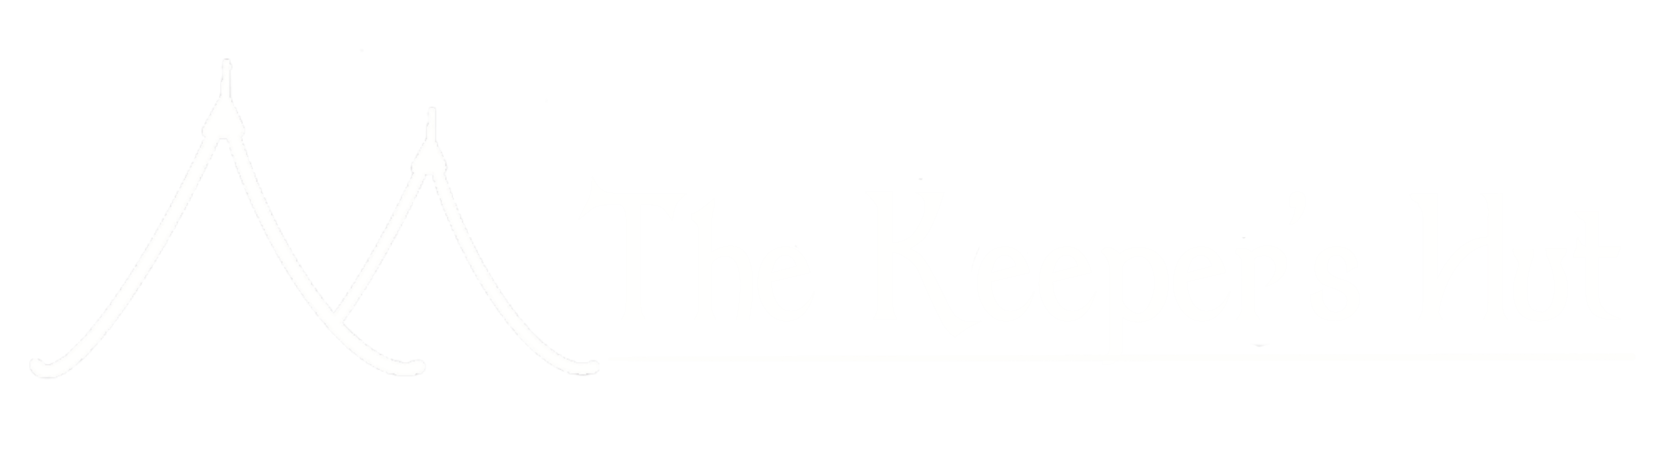 The Keeper's hut